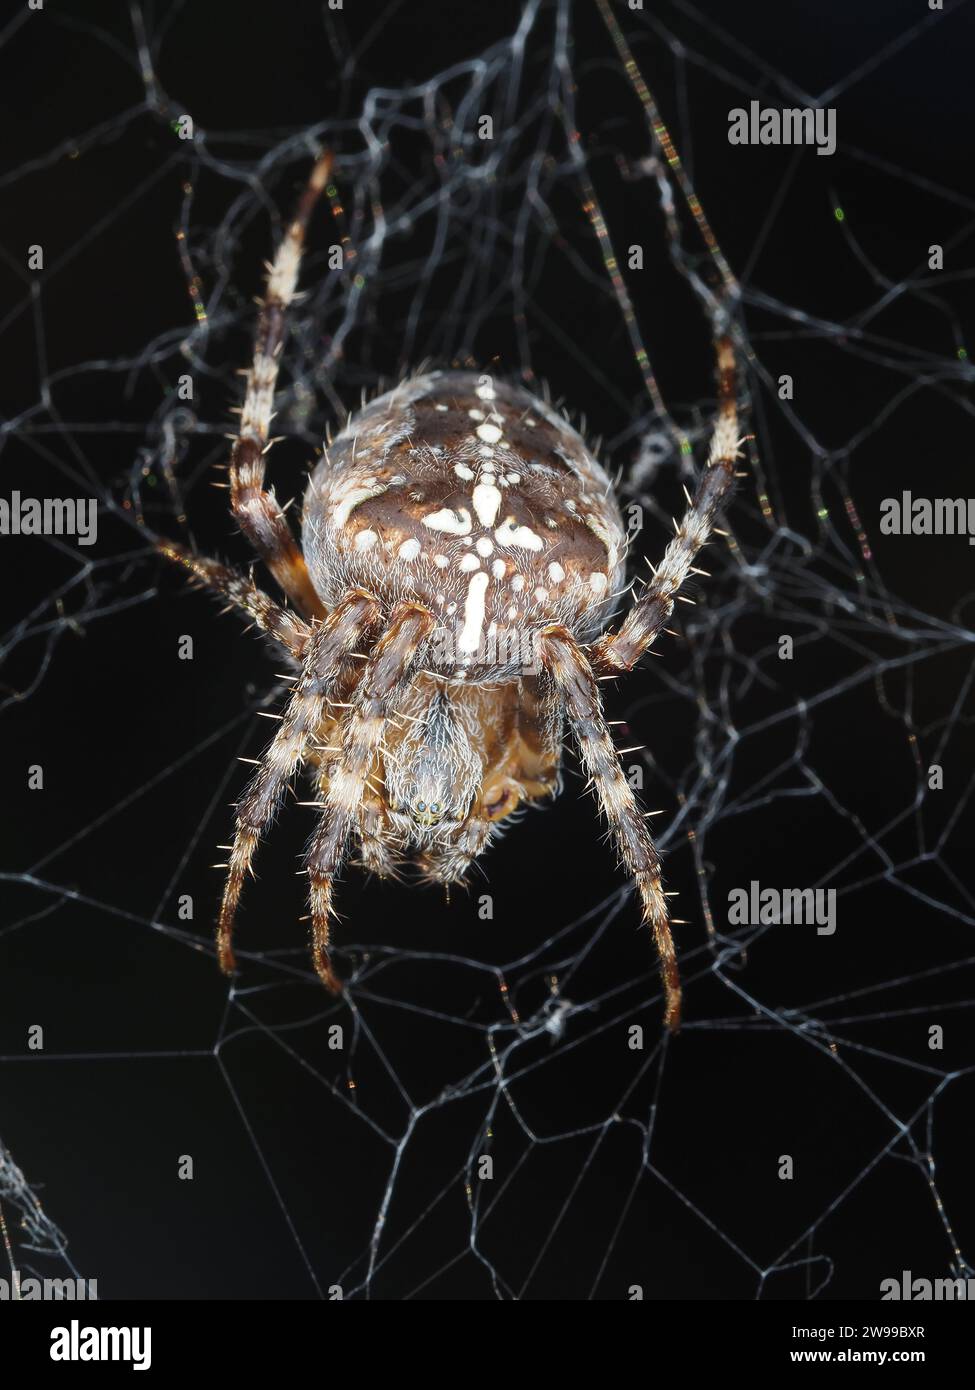 Spider identifiziert als Cross-Orbweaver - Araneus diadematus - gesehen im US-Bundesstaat Washington: Spider-Makrofotografie Stockfoto